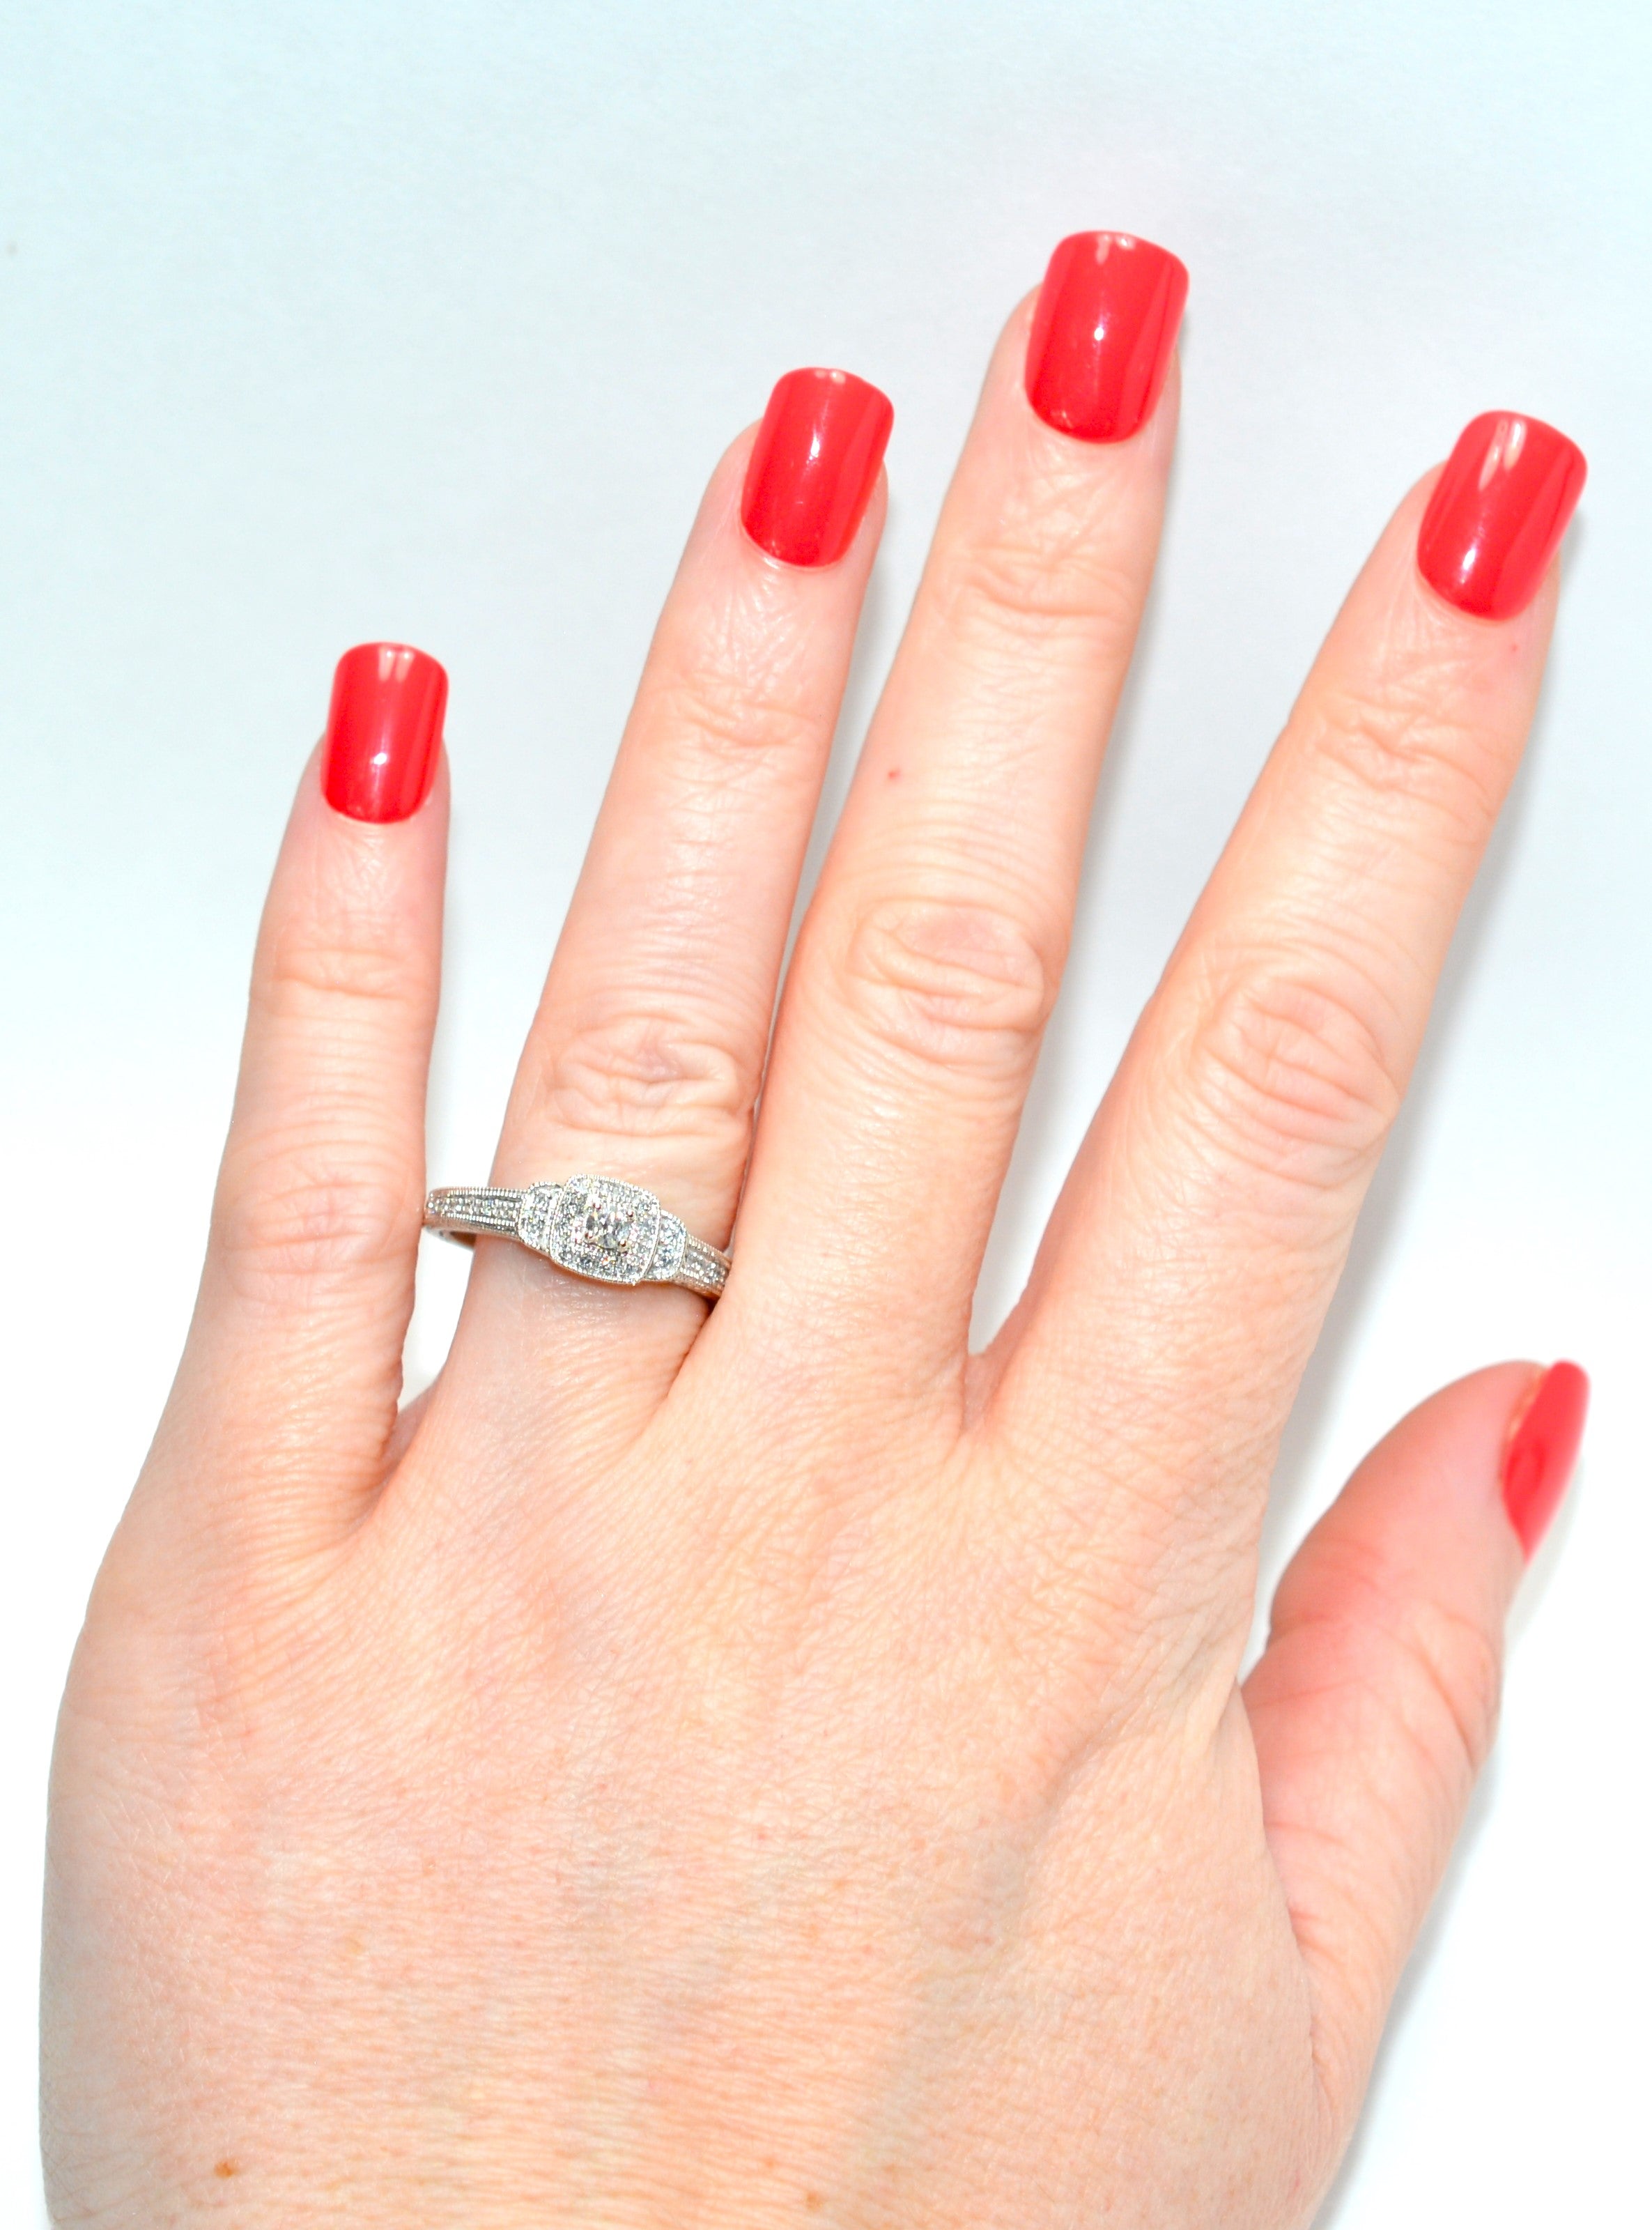 Natural Diamond Ring 10K White Gold .27tcw Engagement Ring Wedding Bridal Jewel